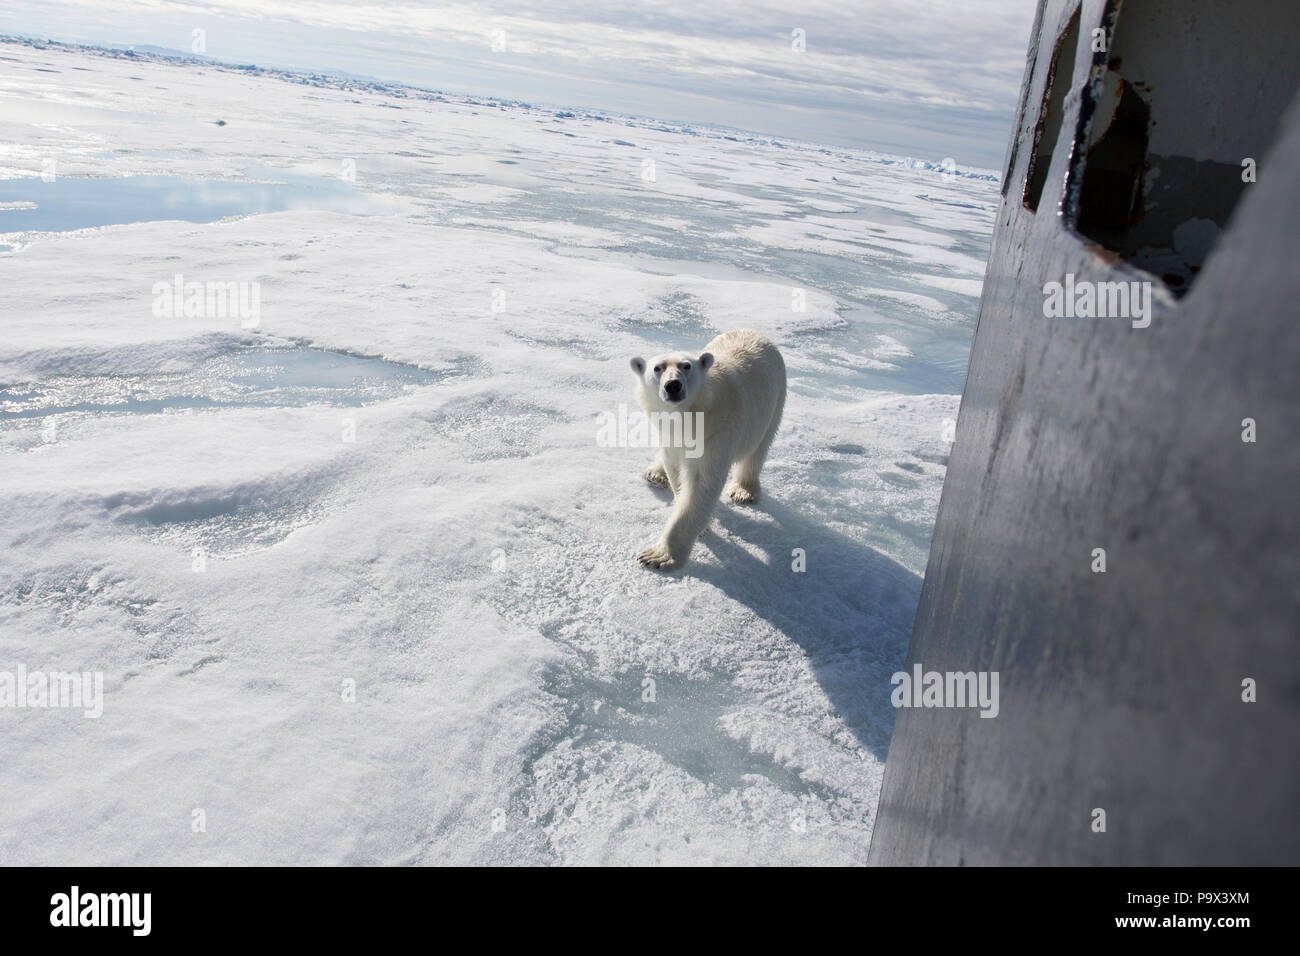 Oso Polar investiga un buque en el mar de hielo cerca de Svalbard Foto de stock